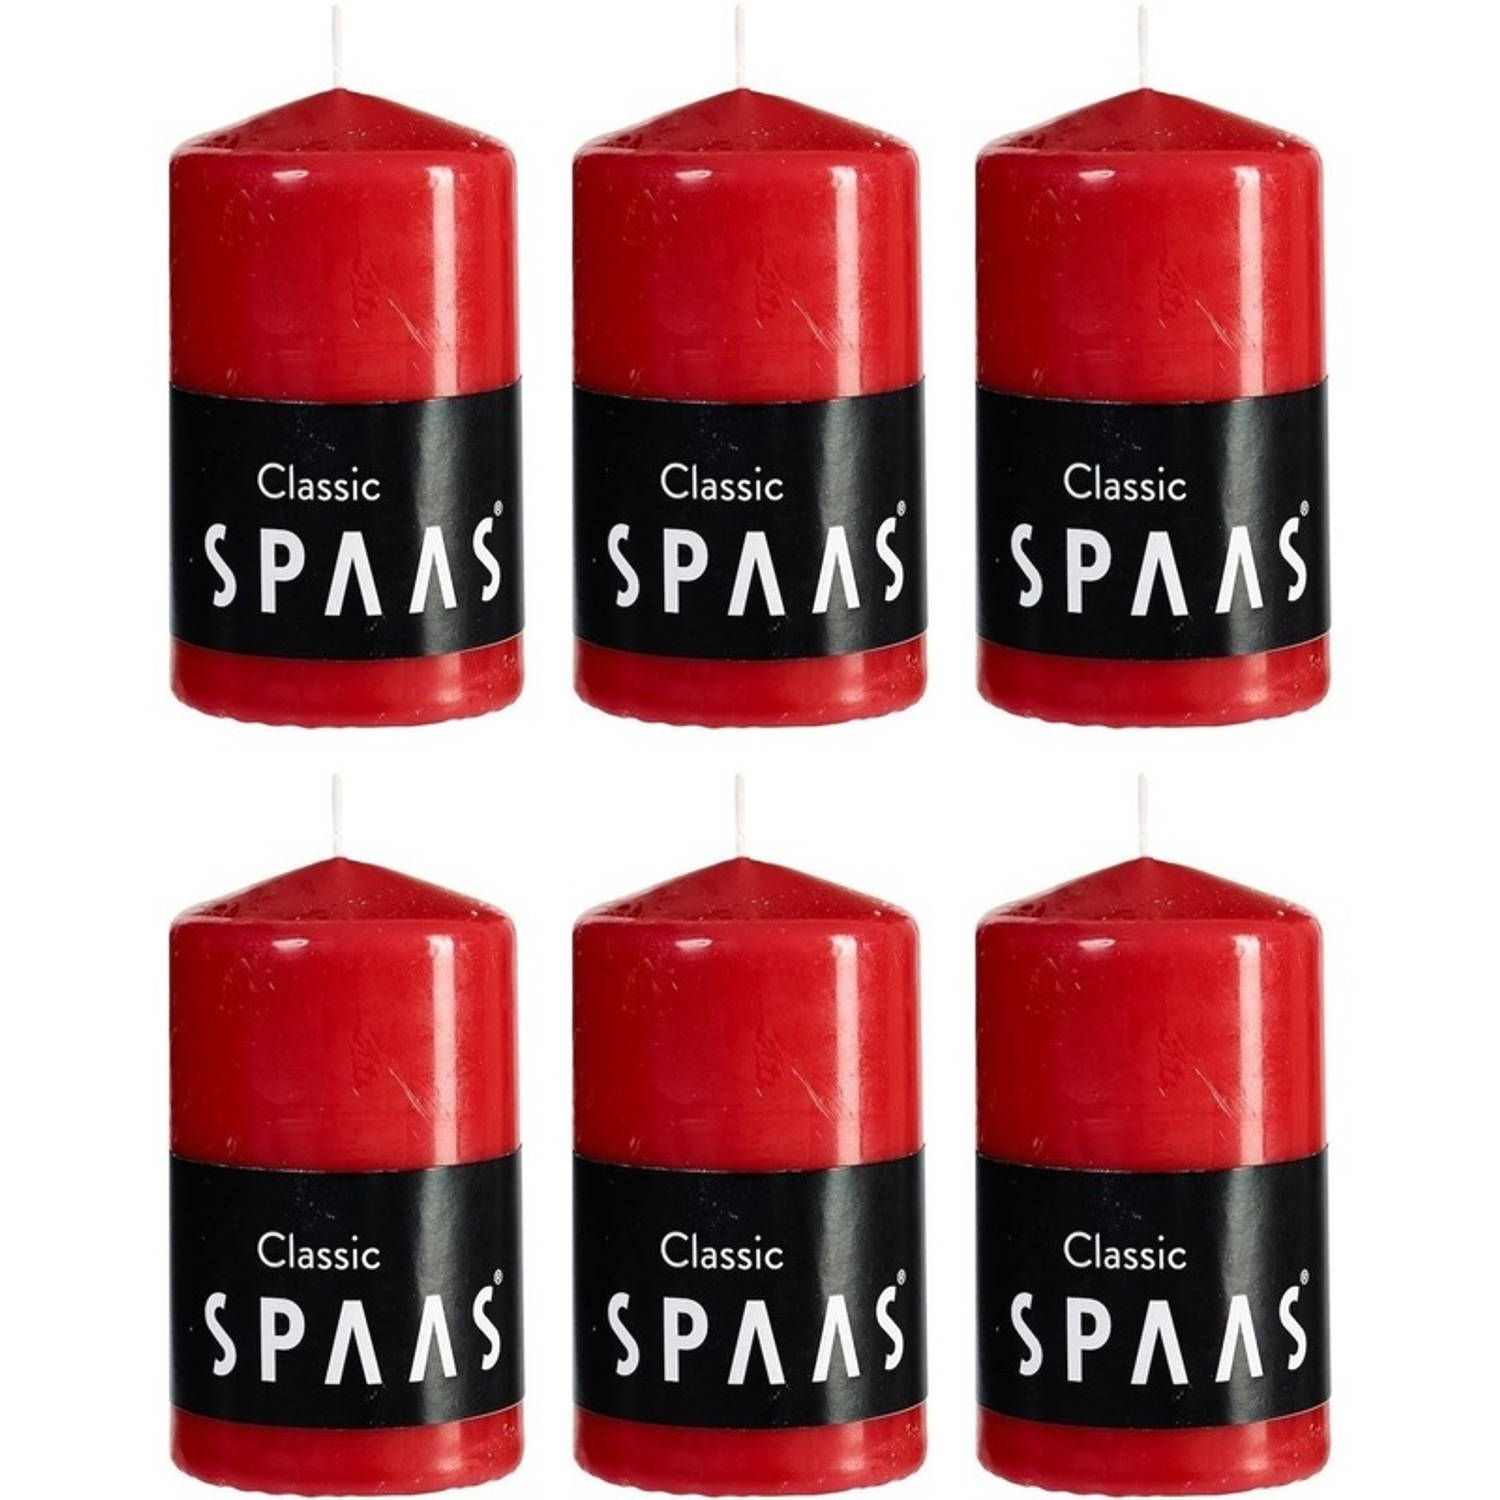 Spaas 6x Rode Cilinderkaarsen/stompkaarsen 6 X 10 Cm 25 Branduren - Geurloze Kaarsen - Woondecoraties - Rood